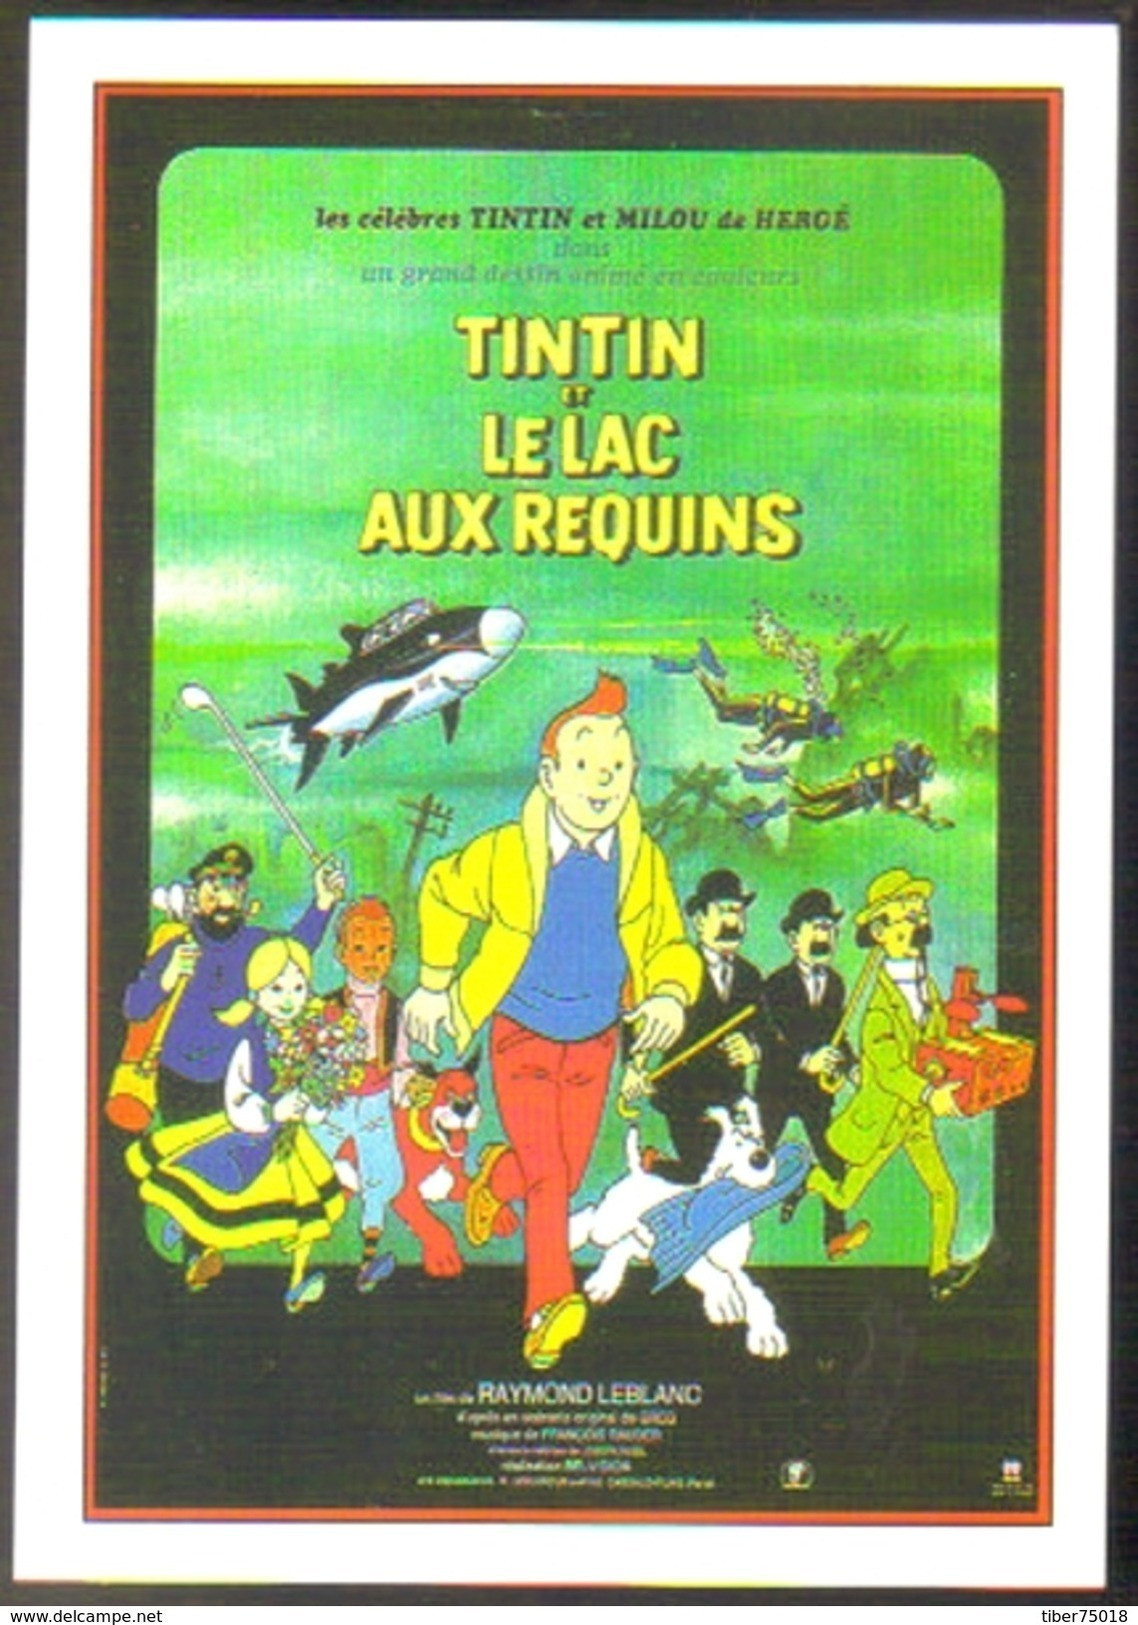 Carte Postale : Tintin Et Le Lac Aux Requins (film - Cinéma - Affiche) Illustration : Hergé - Hergé